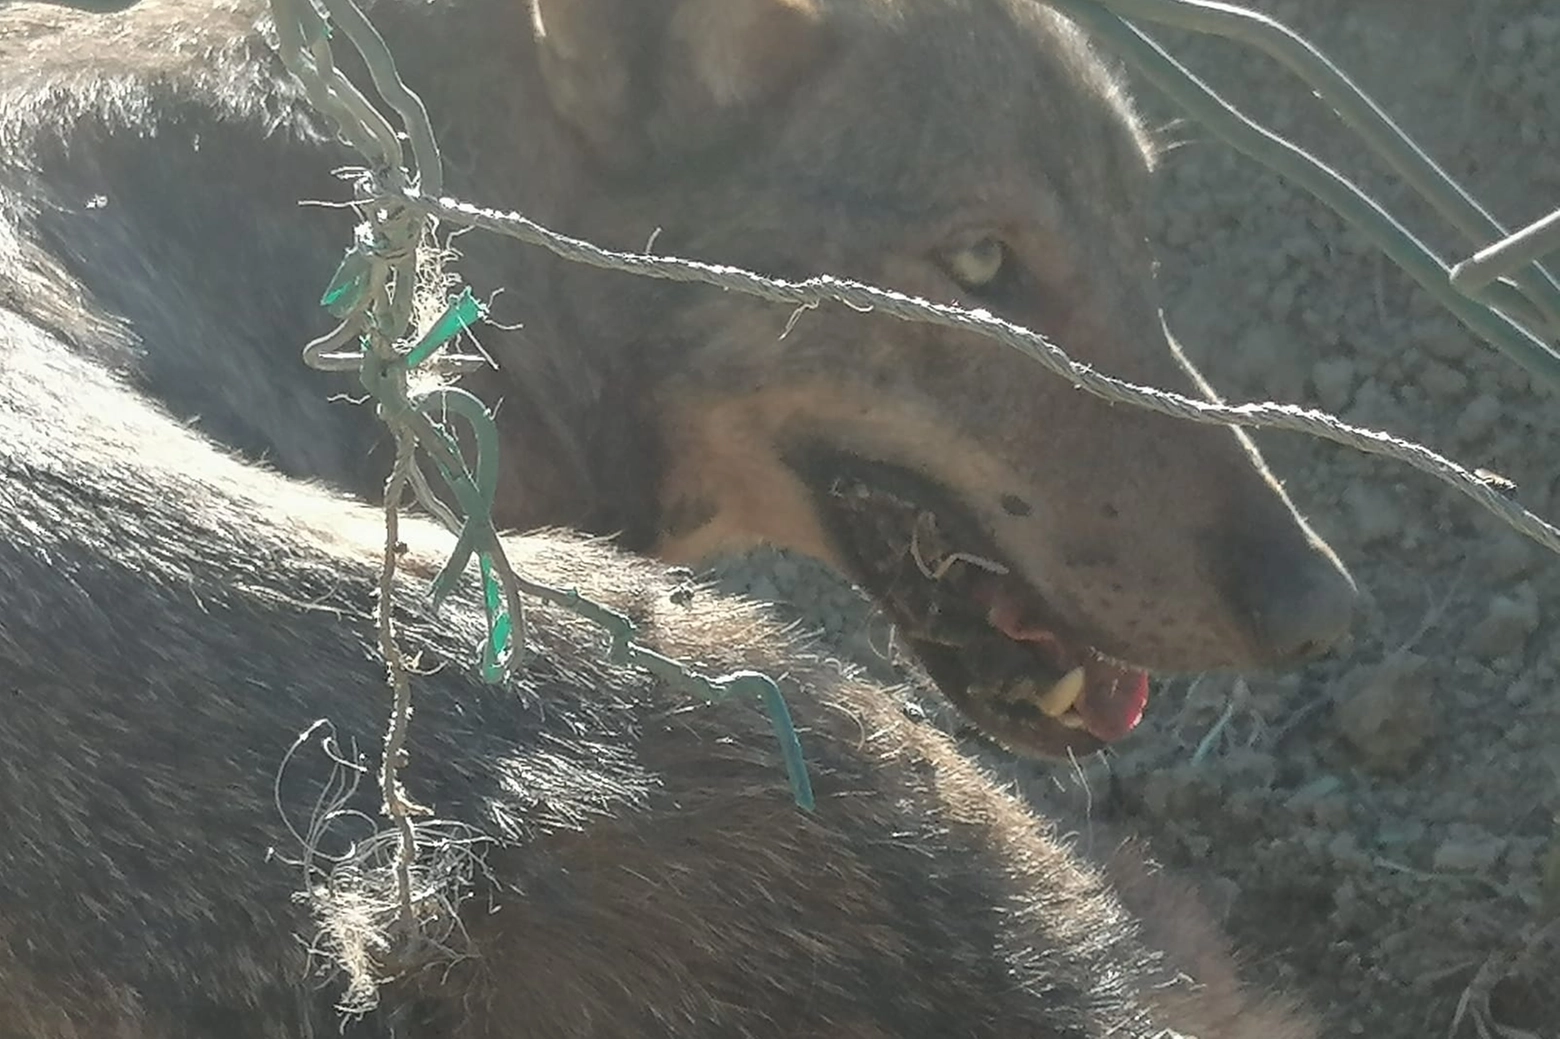 secondo lupo preso al laccio in prossimità de ranch di valentino rossi